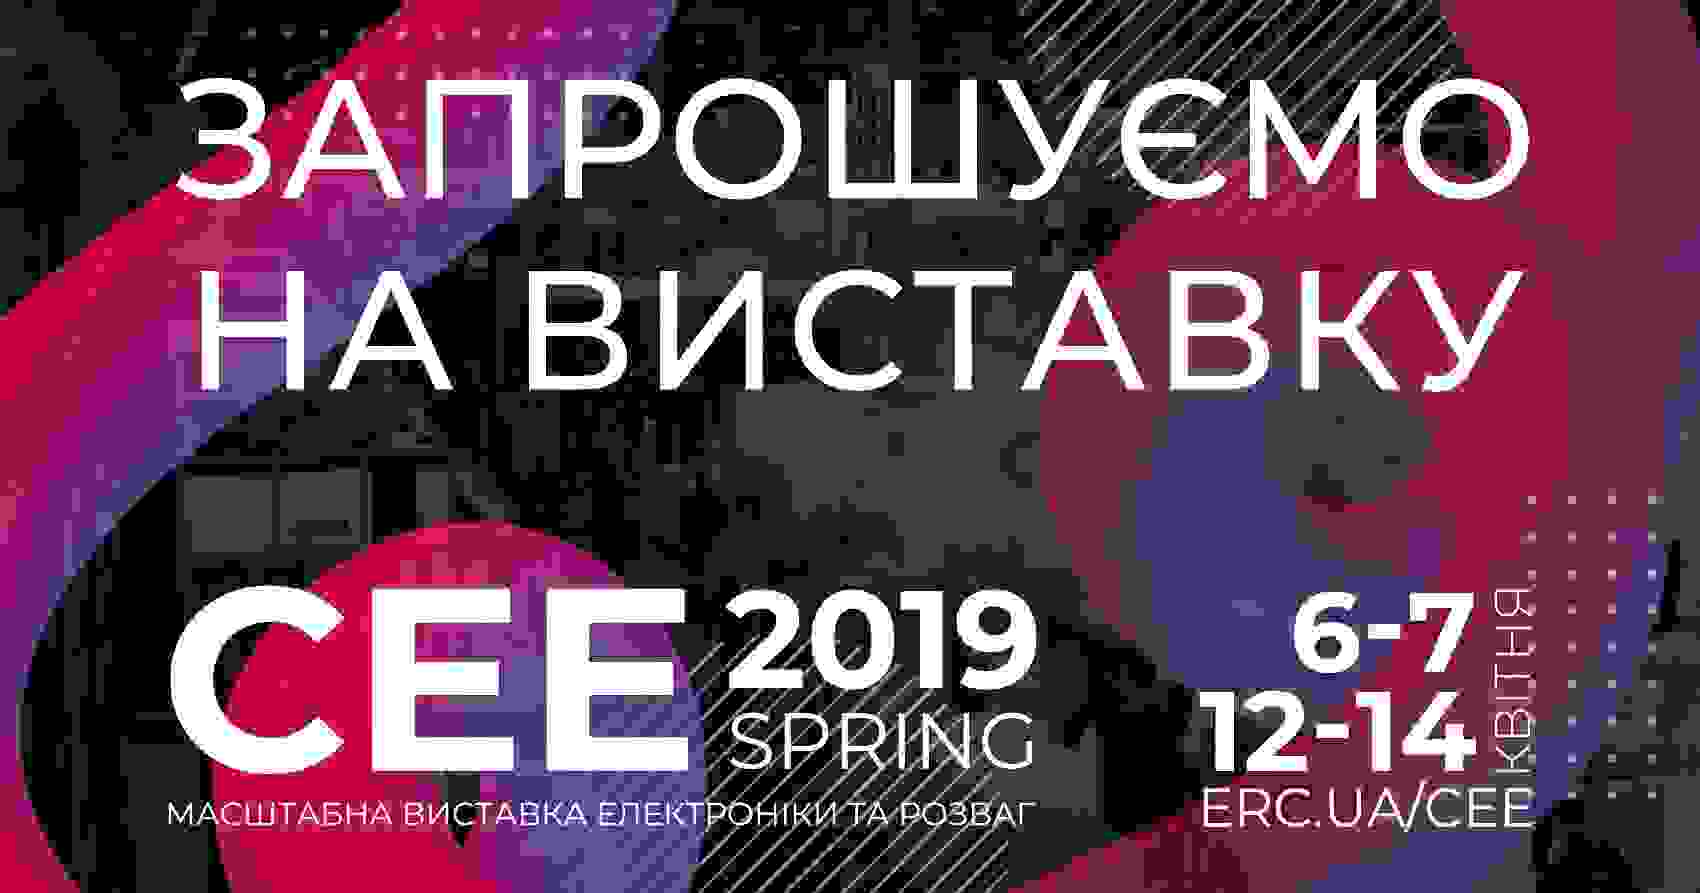 На этих выходных в Киеве пройдет выставка CEE 2019